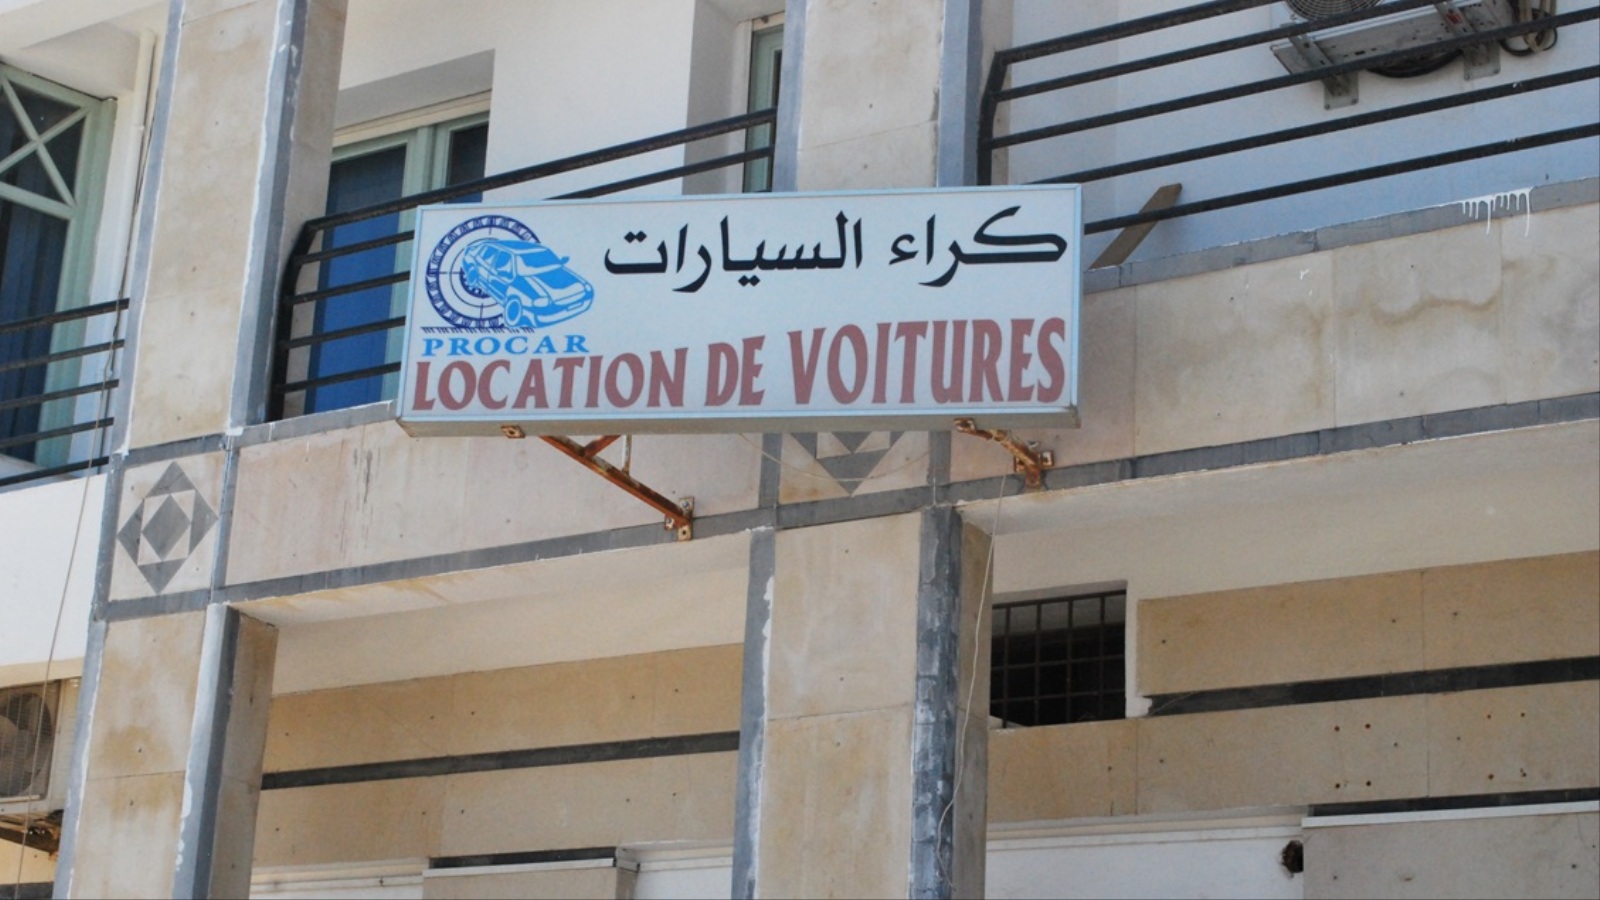 لافتة في أحد شوارع العاصمة تونس تشير إلى محل لتأجير السيارات (الجزيرة)